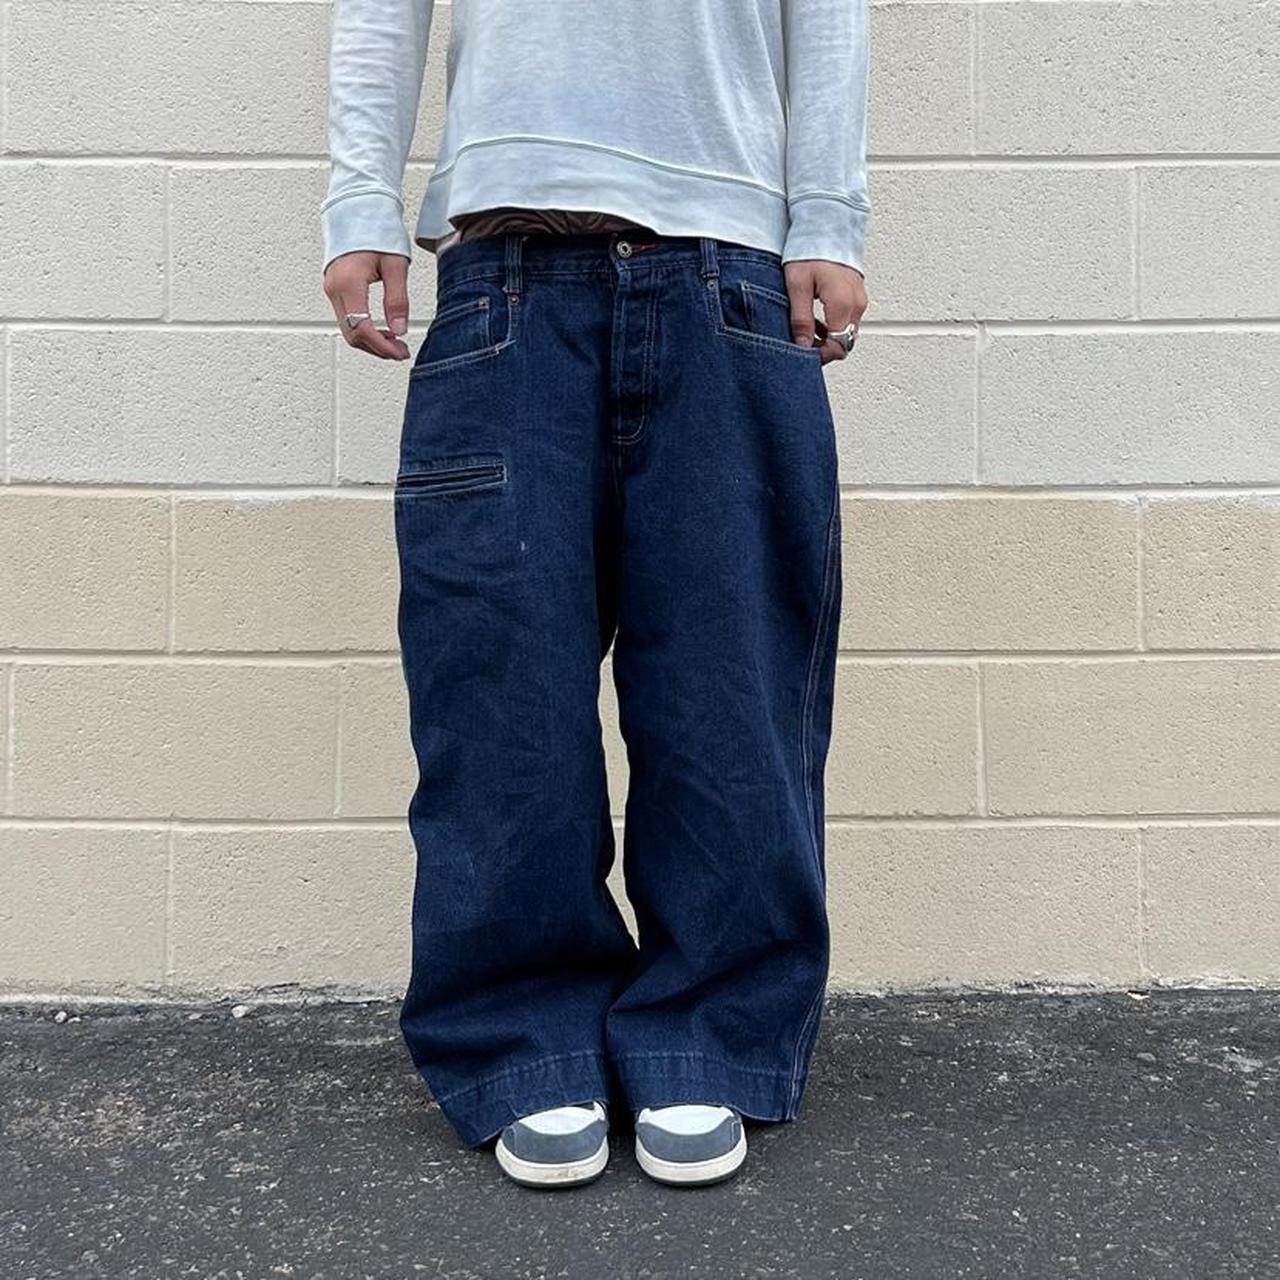 NOT REAL PRICE Kikwear jeans crazy leg opening... - Depop